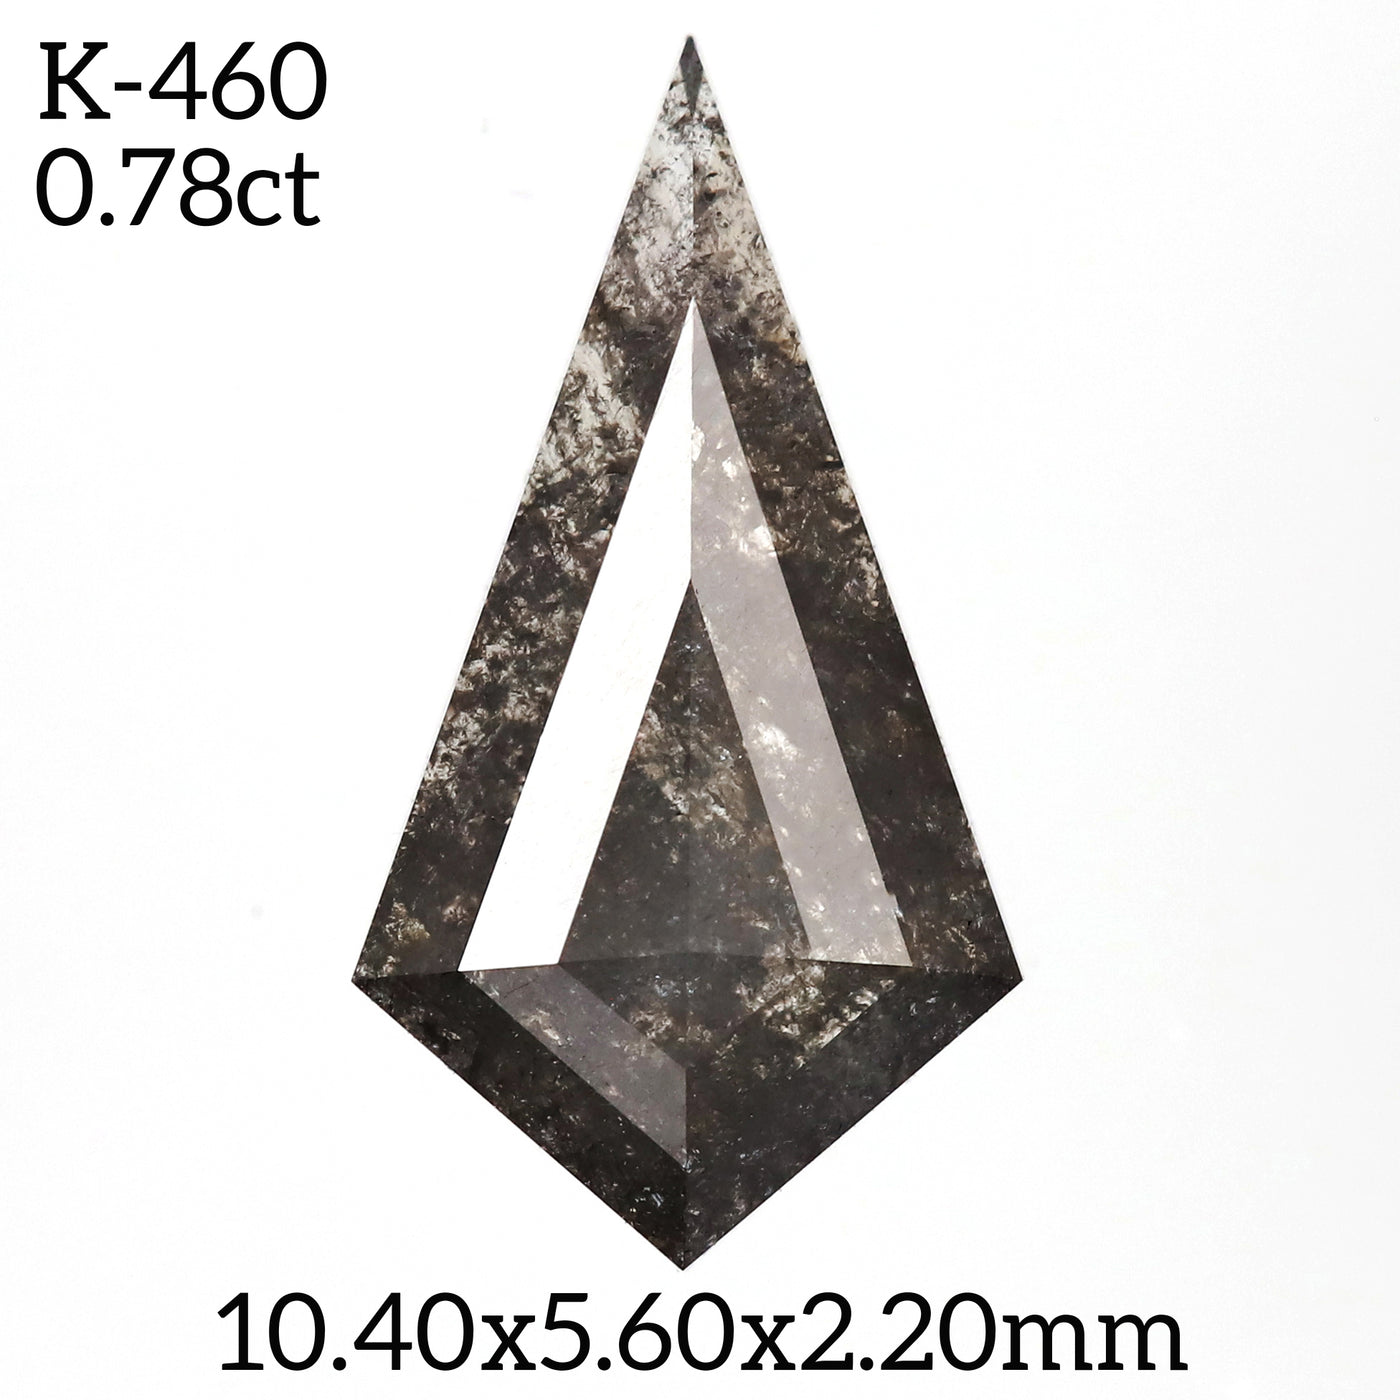 K460 - Salt and pepper kite diamond